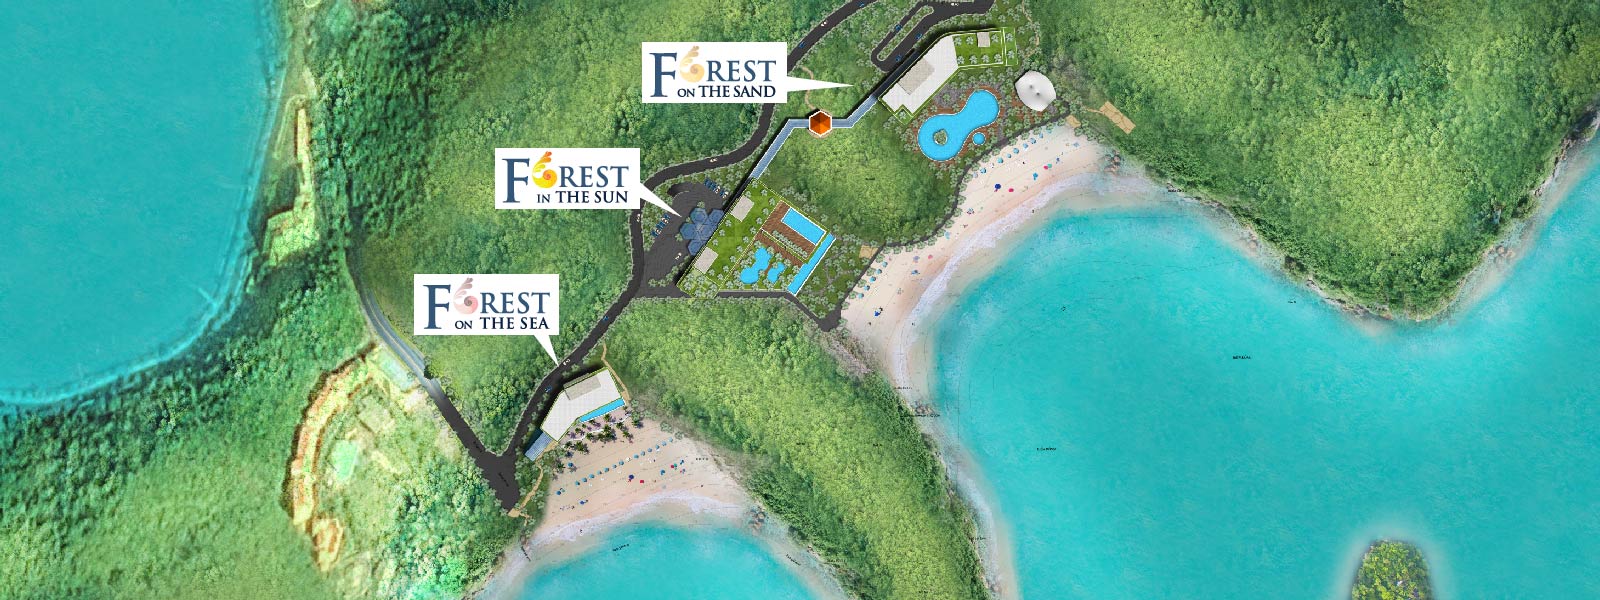 Mặt bằng tổng thể dự án Flamingo Cát Bà Beach Resort